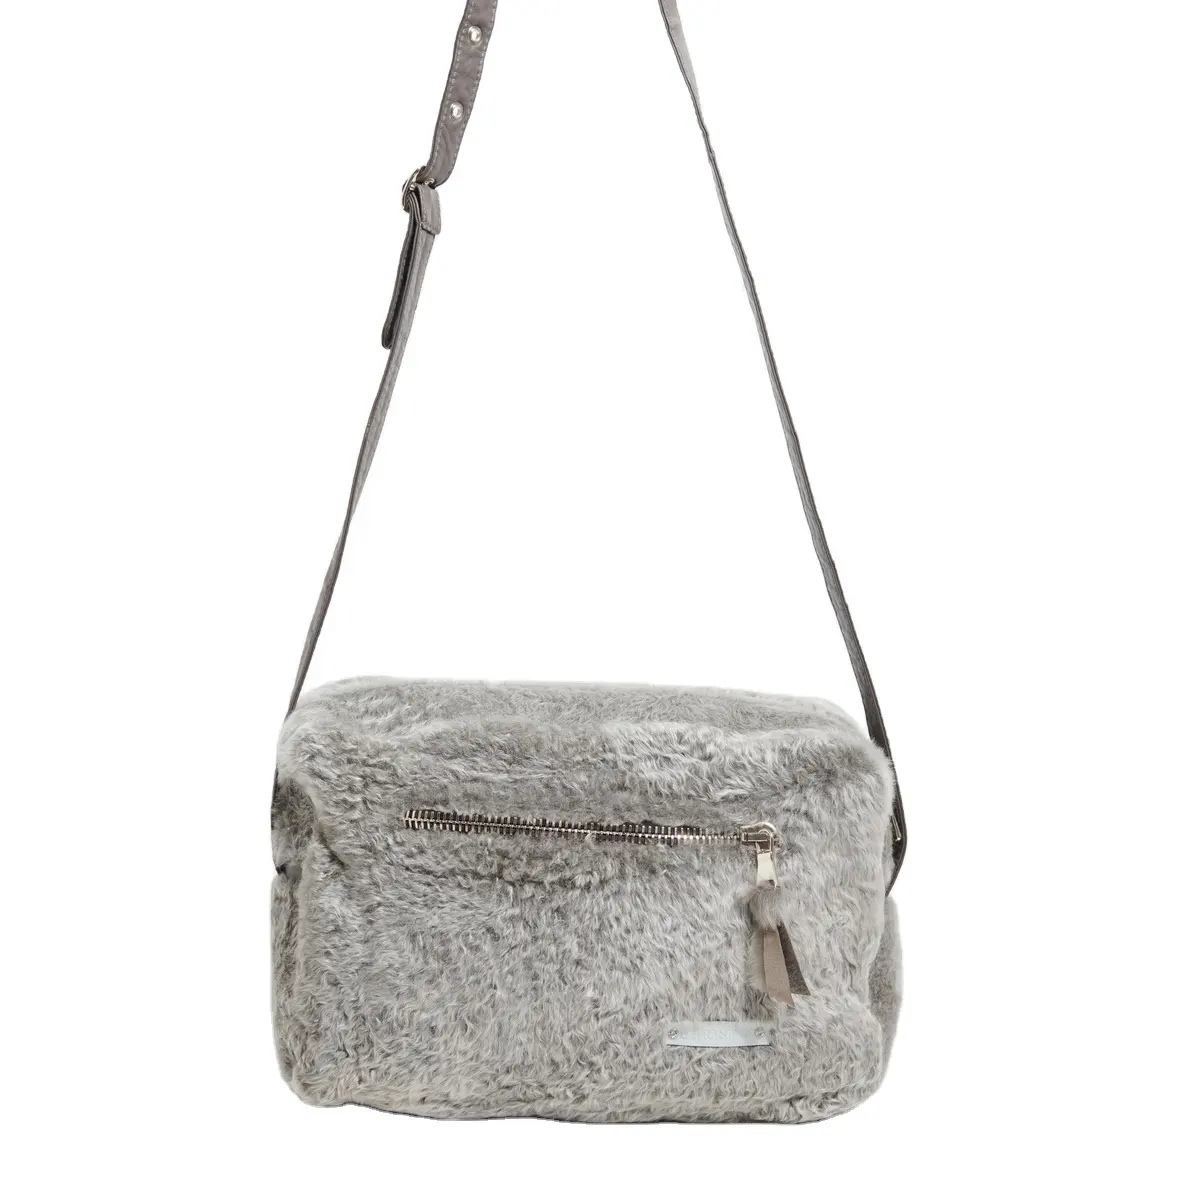 Alta melhor qualidade italiana artesanal cinza colorido Shearling Messenger Bag com tira do ombro para exportt